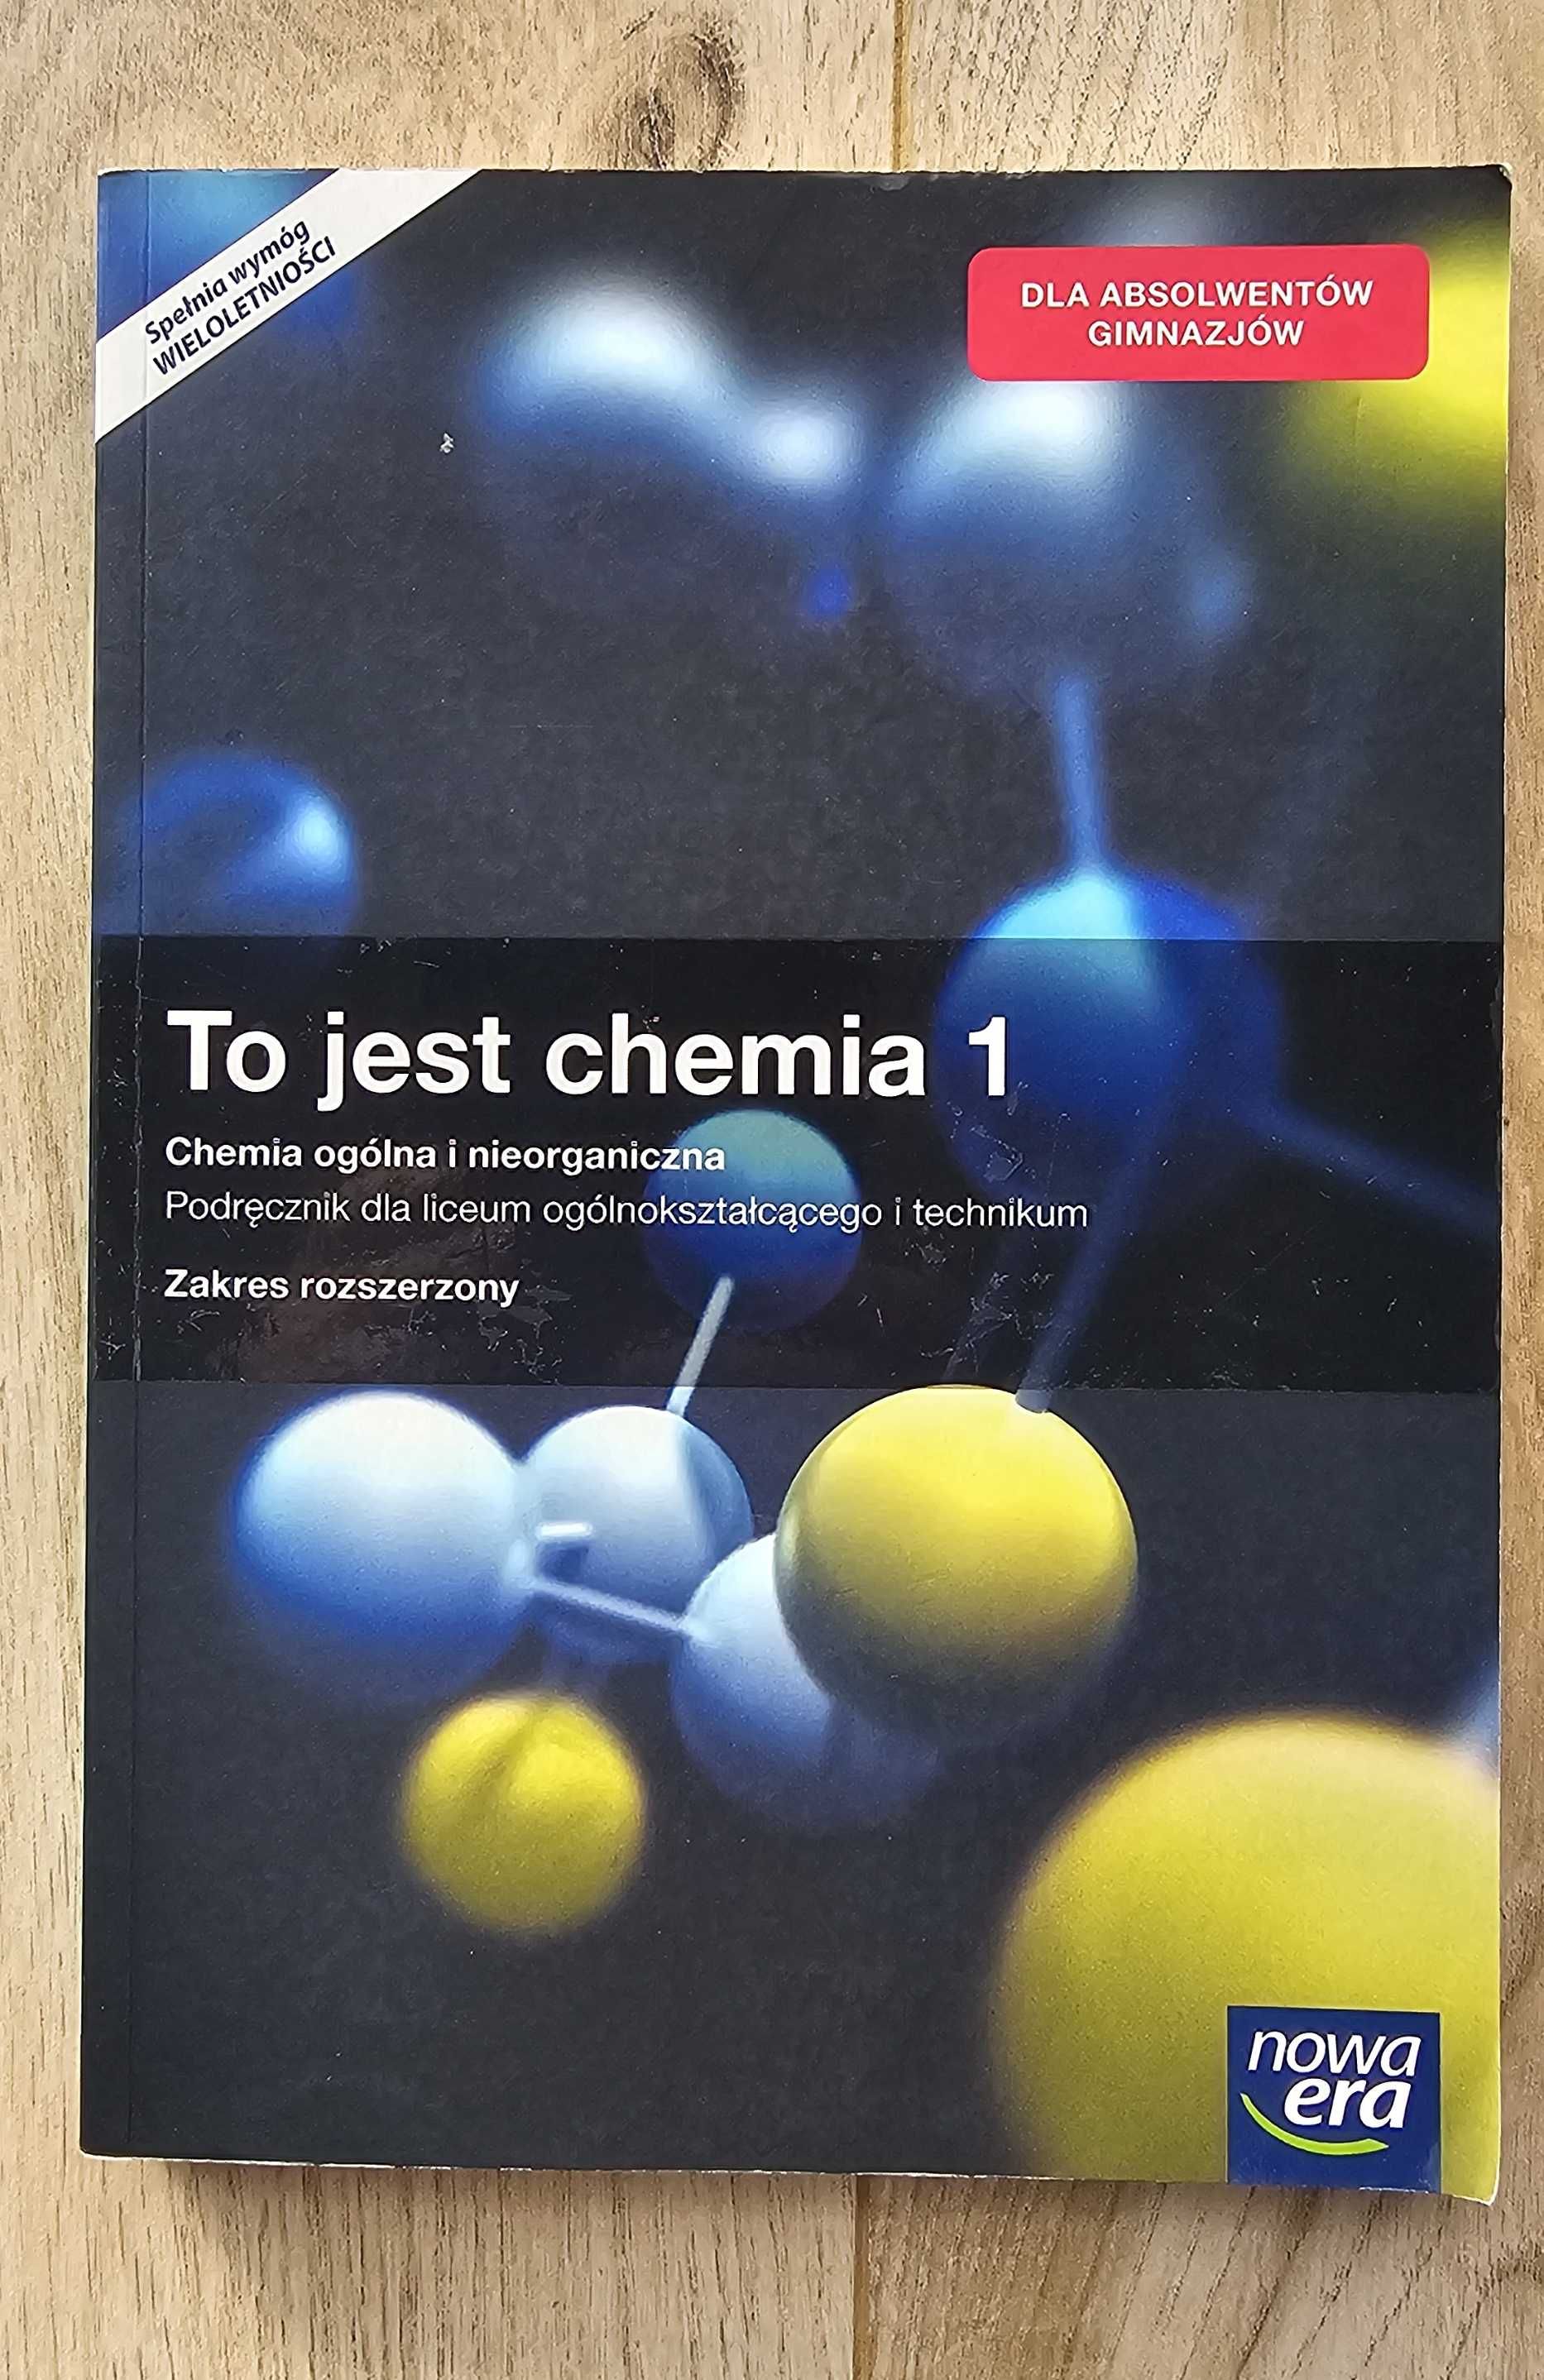 To jest chemia - podręcznik dla liceum ogólnokształcącego i technikum